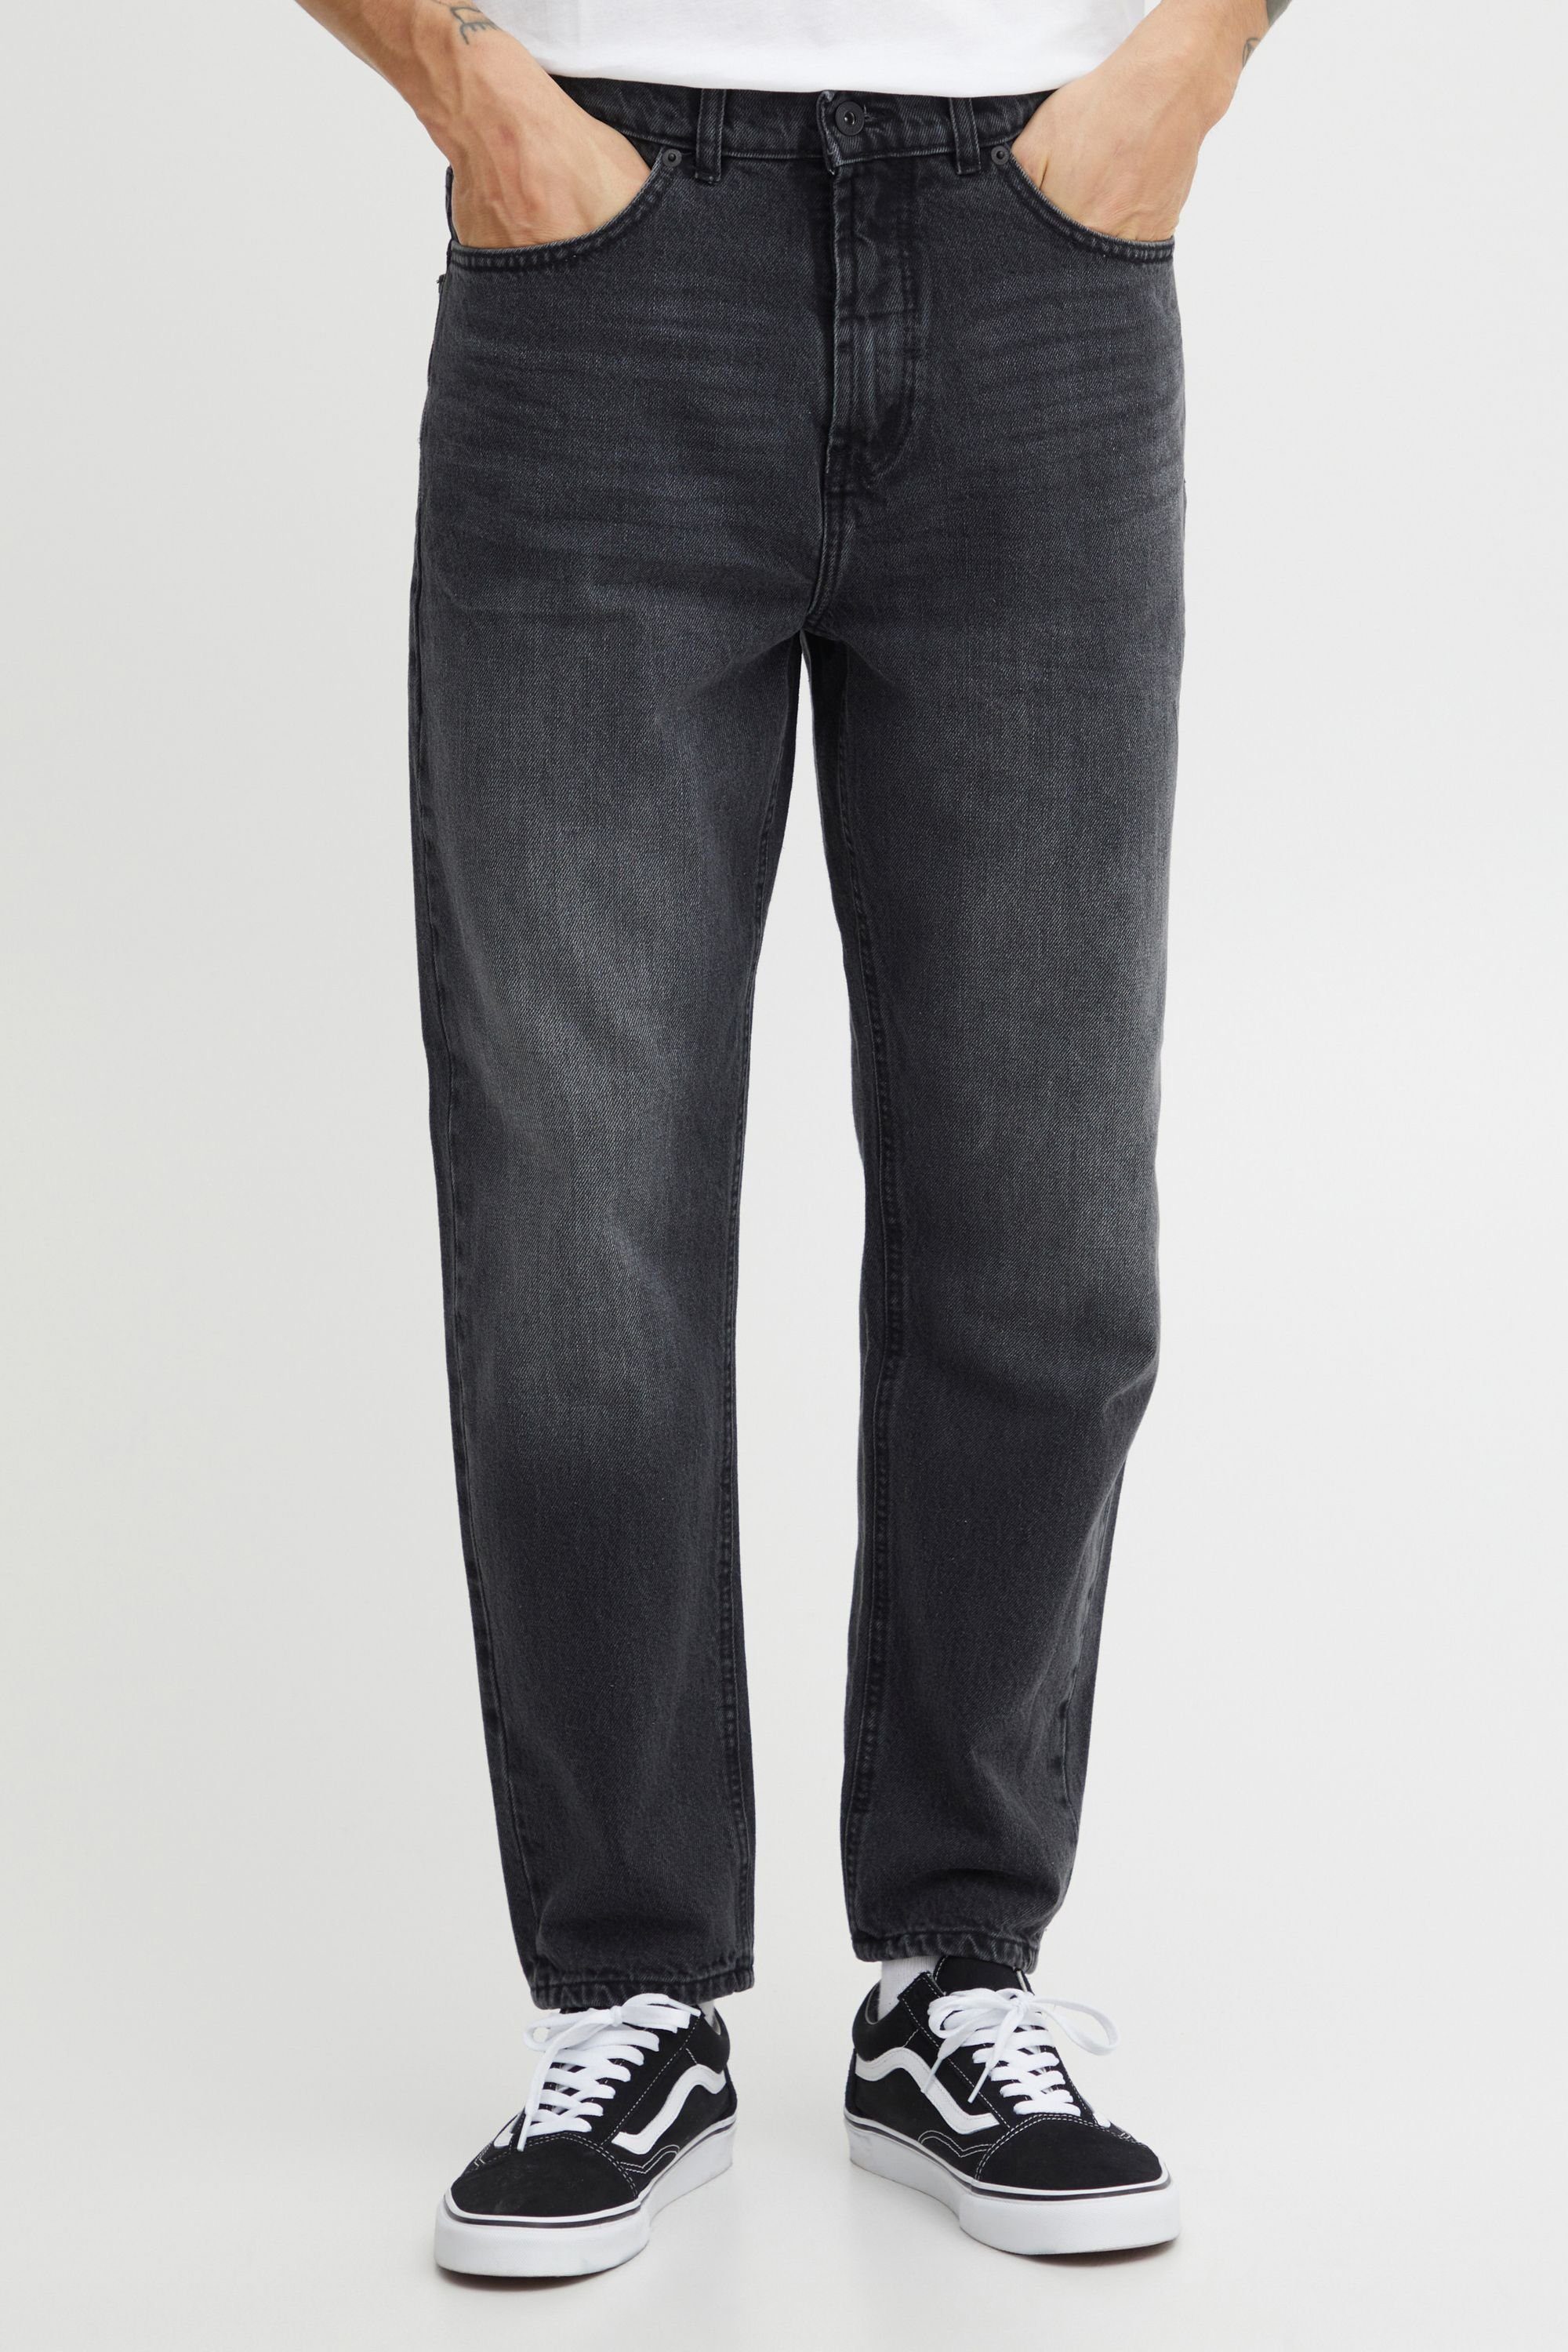 !Solid Black 5-Pocket-Jeans Denim Vintage (700036) SDBoaz